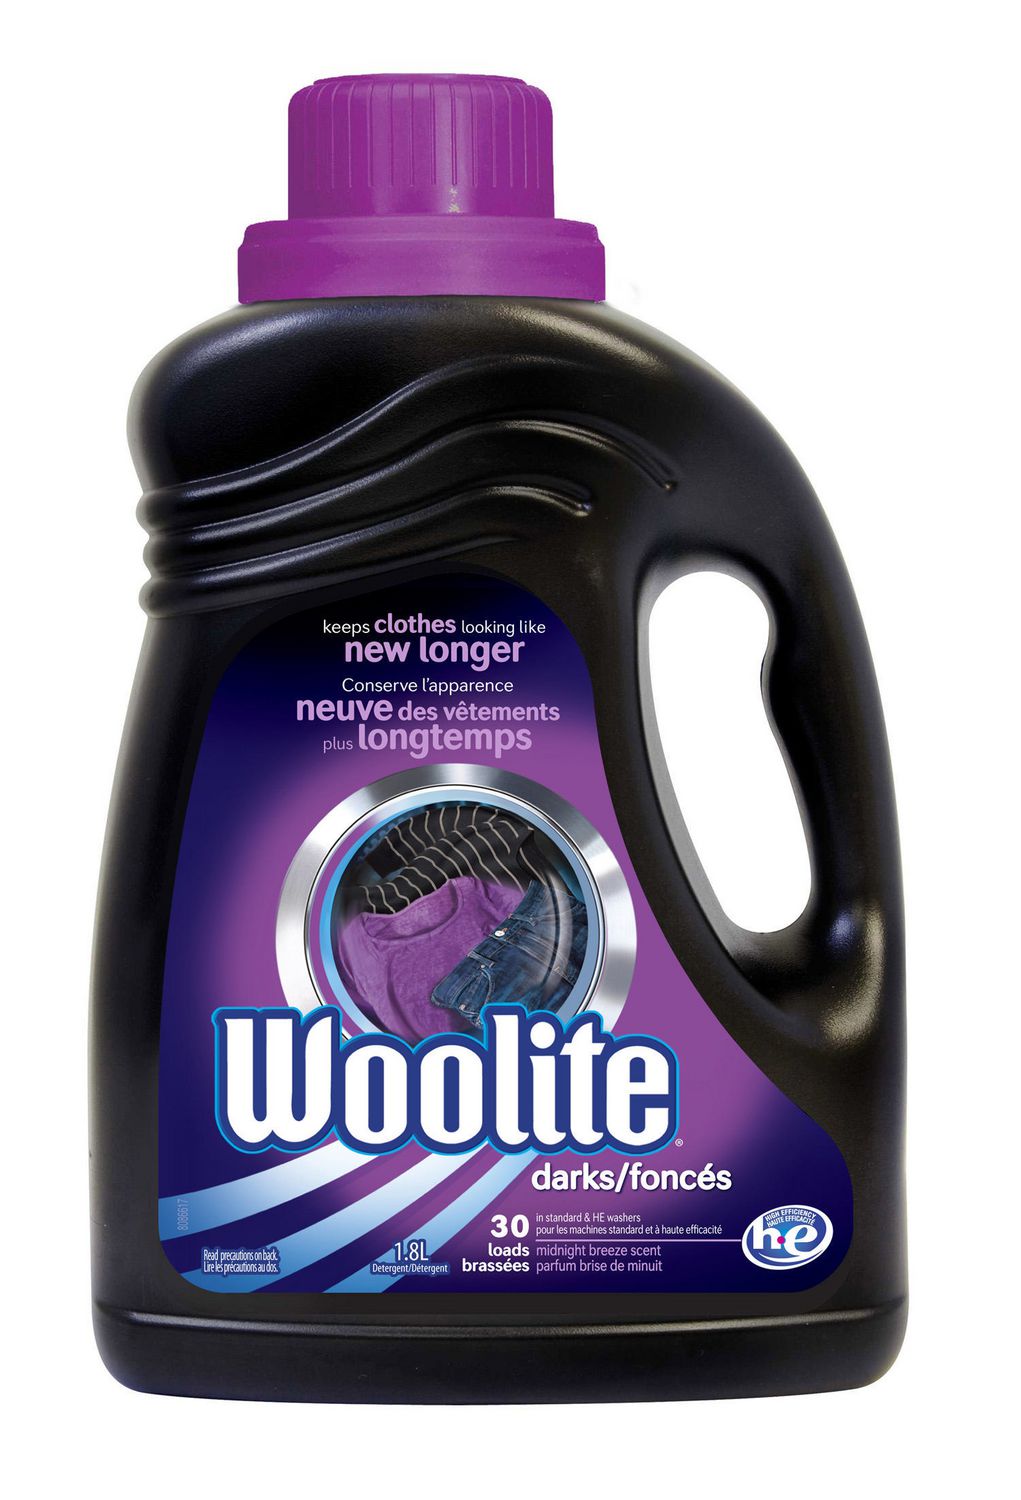 Woolite Darks Liquid Laundry Detergent Walmart Canada within Detergent For Black Clothes